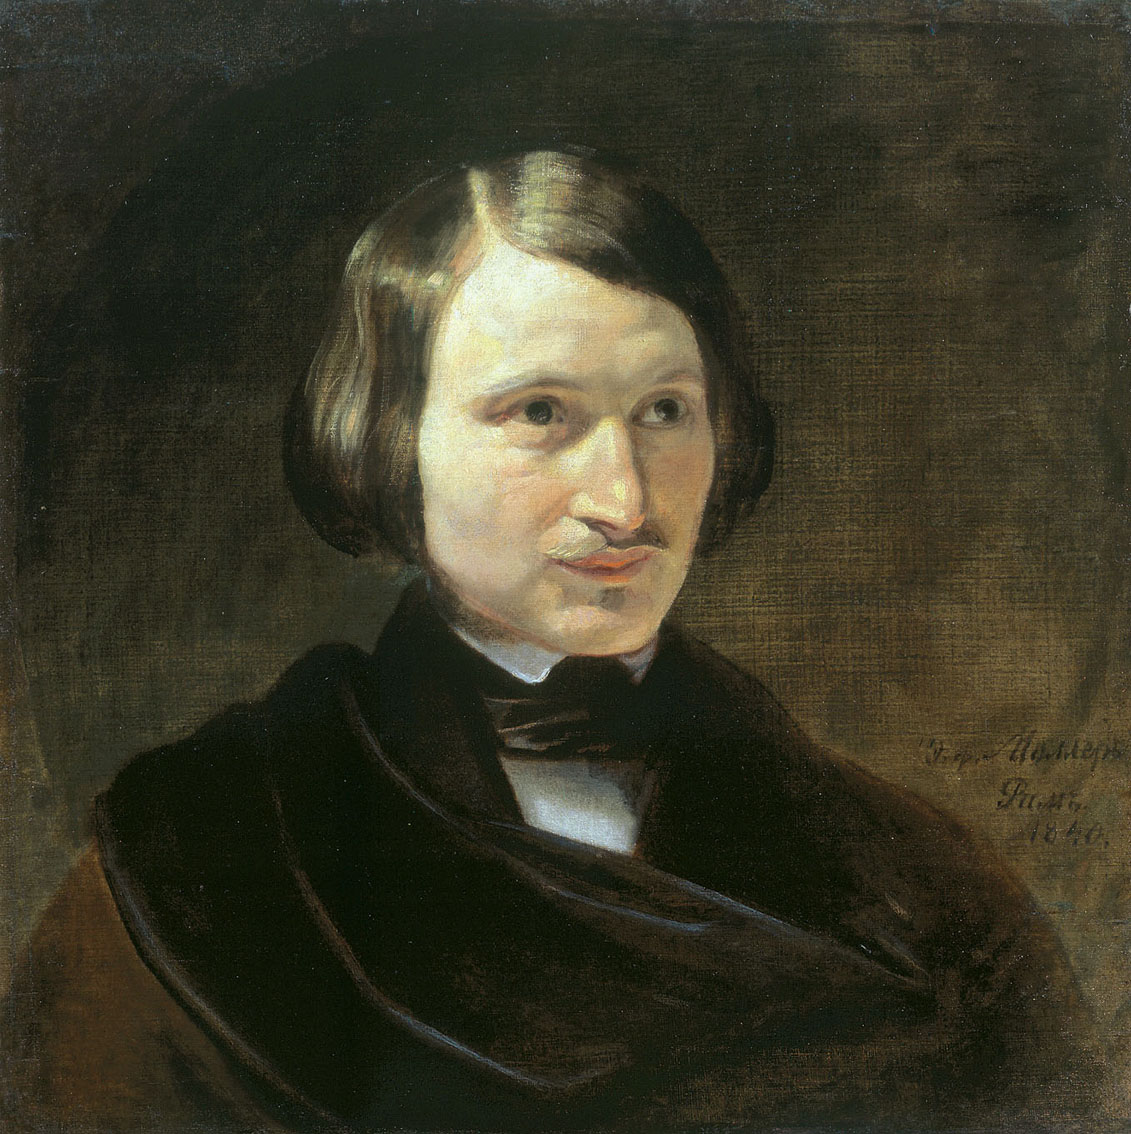 Николай Гоголь. Портрет кисти Федора Моллера, 1840